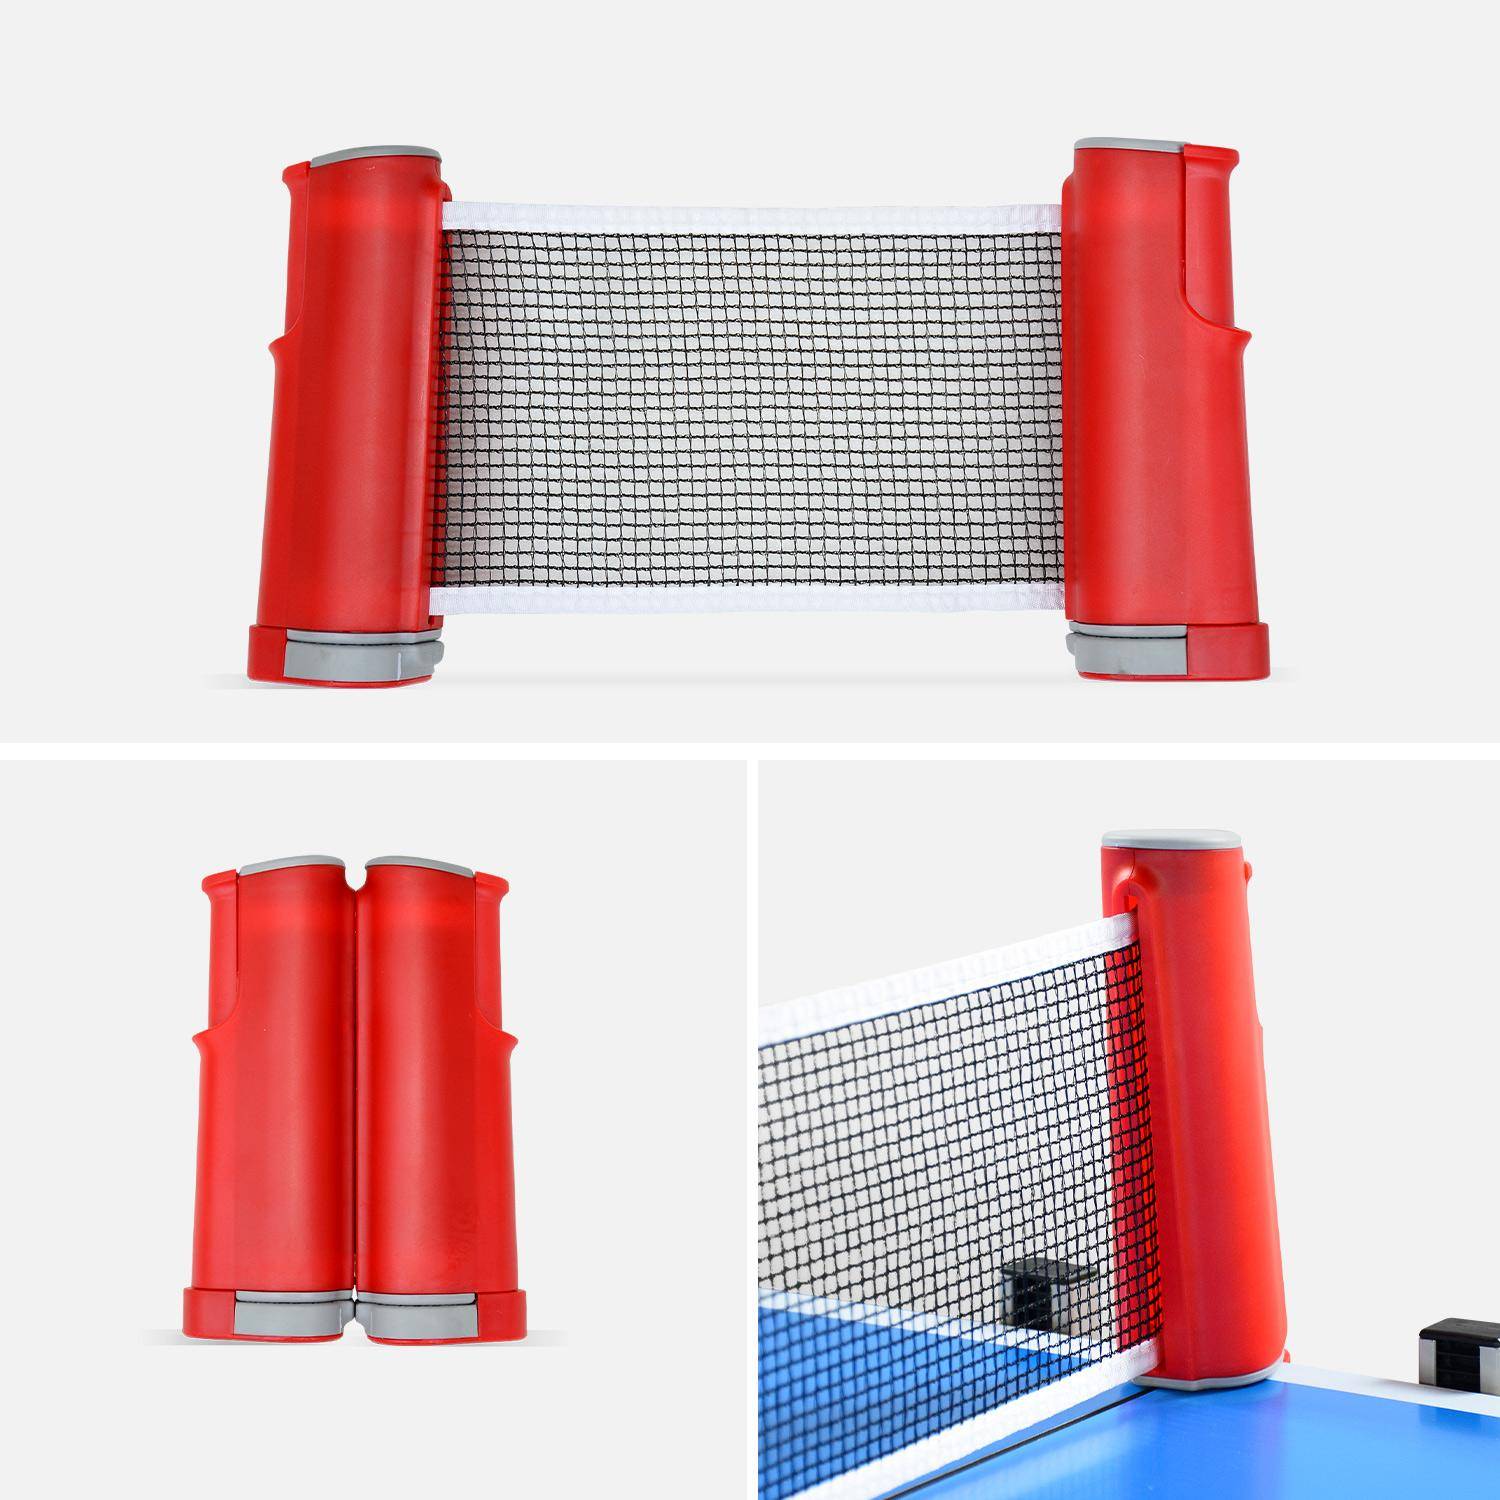 Table de ping pong INDOOR bleue - table pliable avec 2 raquettes et 3 balles, pour utilisation intérieure, sport tennis de table Photo4